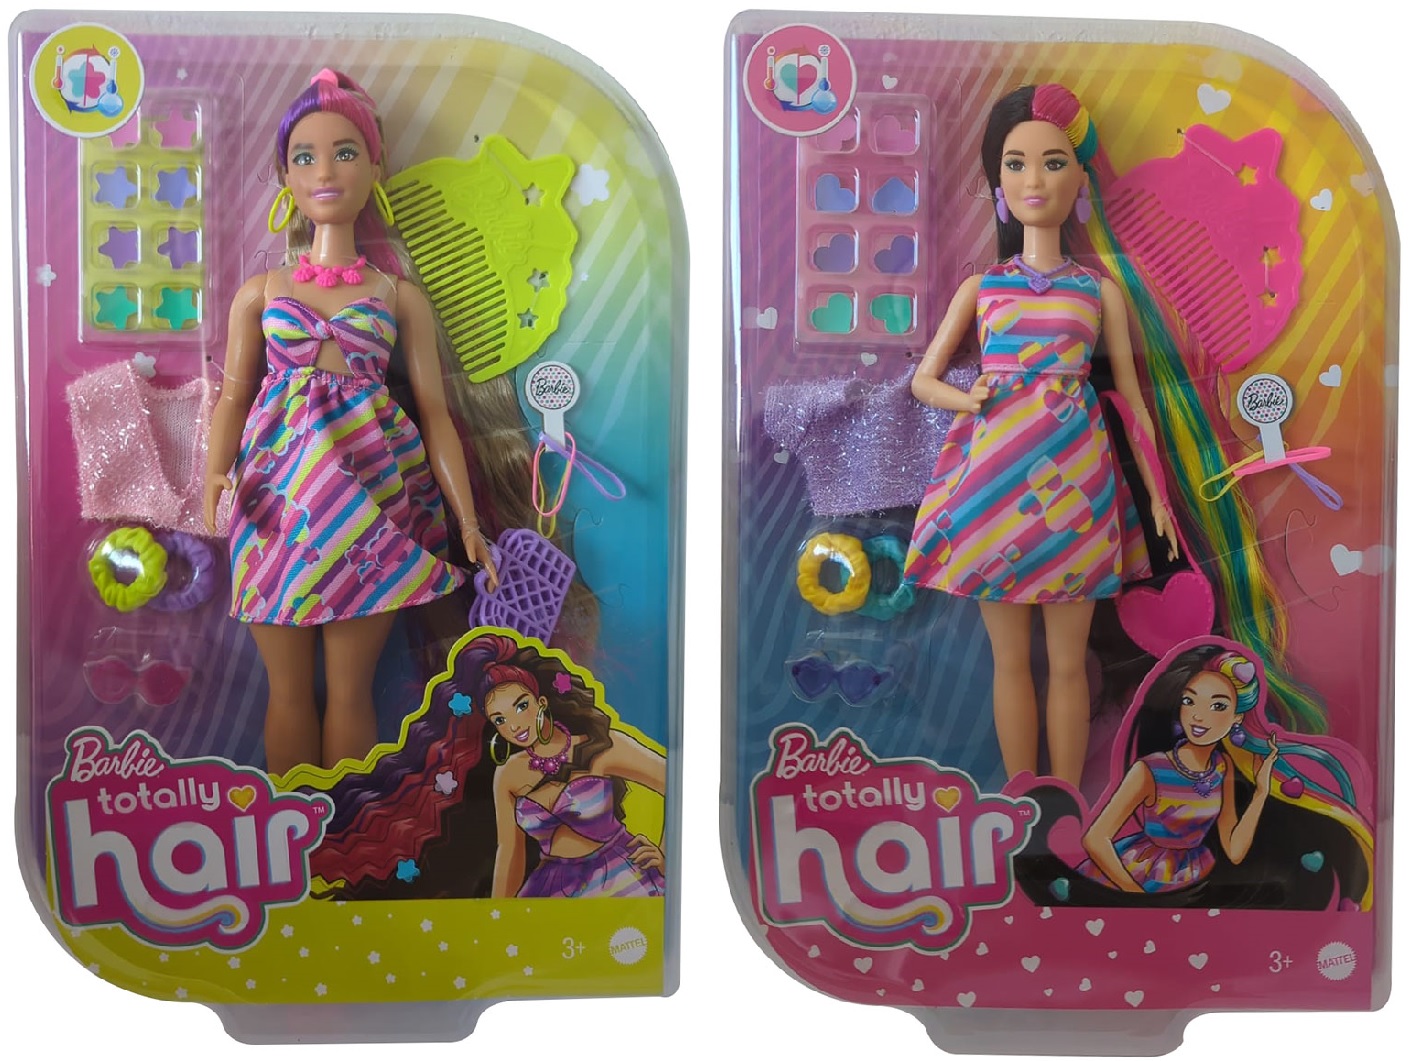 Barbie Totally Hair Star Puppen im buntem Blumenkleid oder im bunten gestreiften Kleid mit 15 Zubehörteilen, Haarspangen, Haargummis, Kamm, Handtasche (Auswahl)